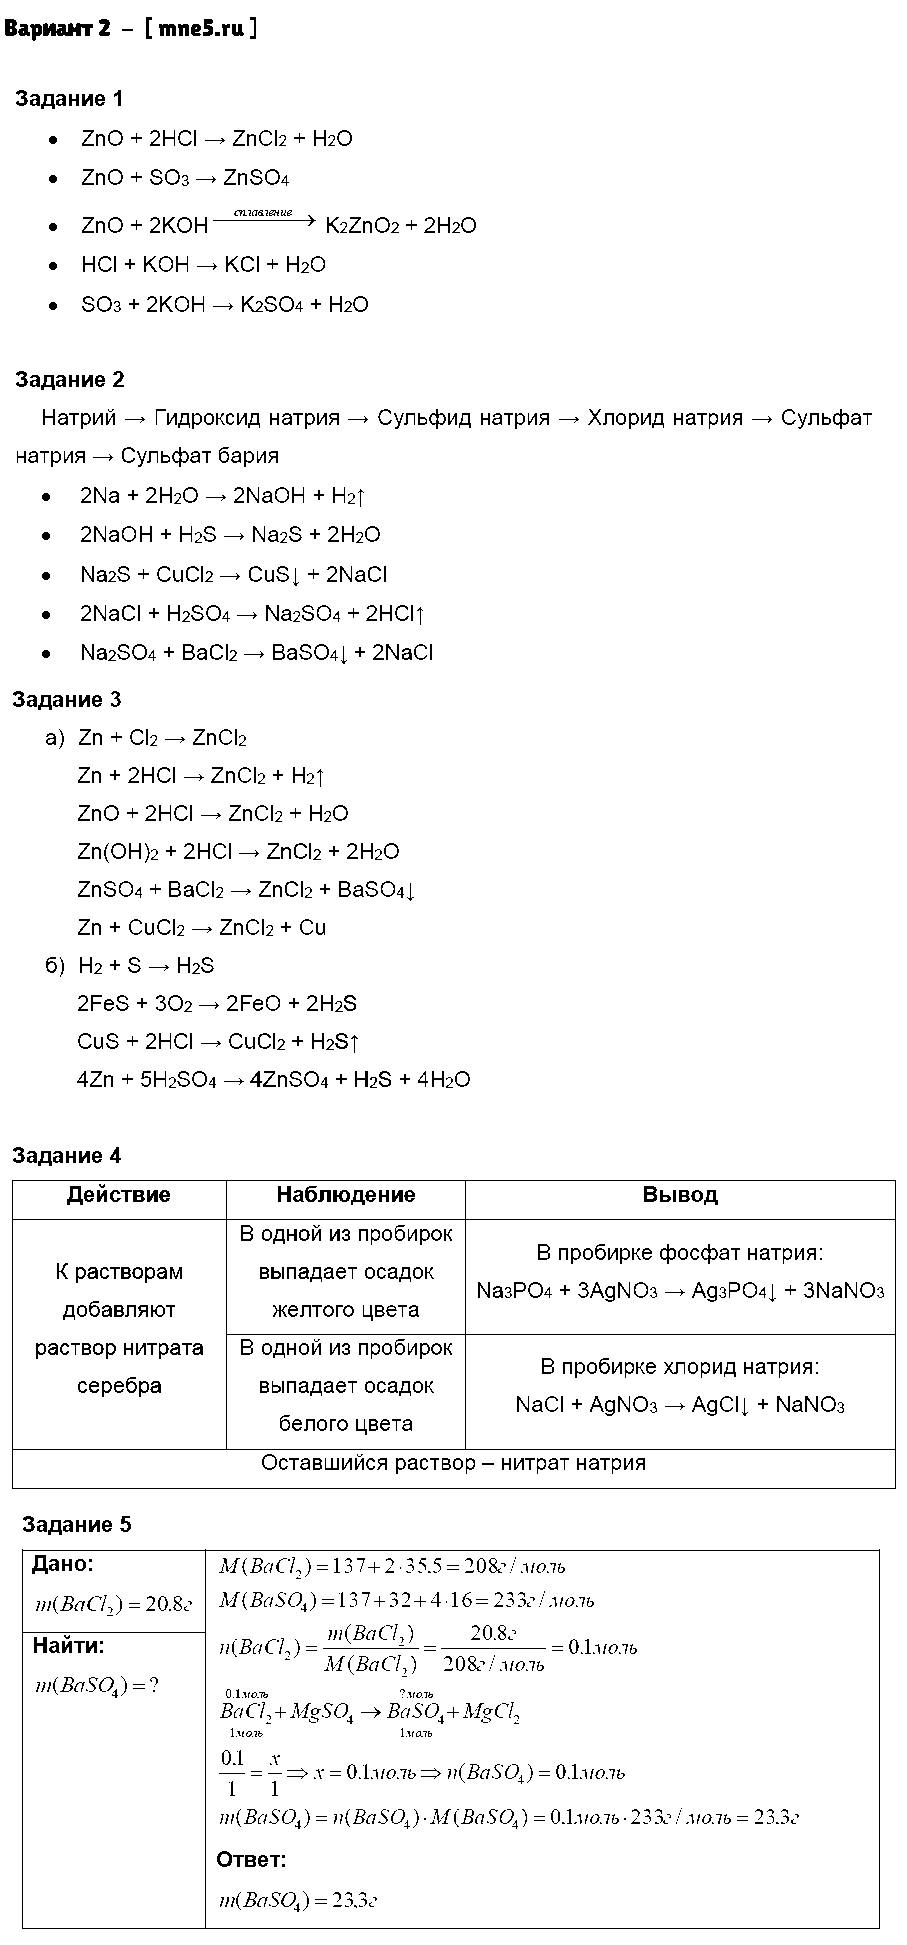 ГДЗ Химия 8 класс - Вариант 2